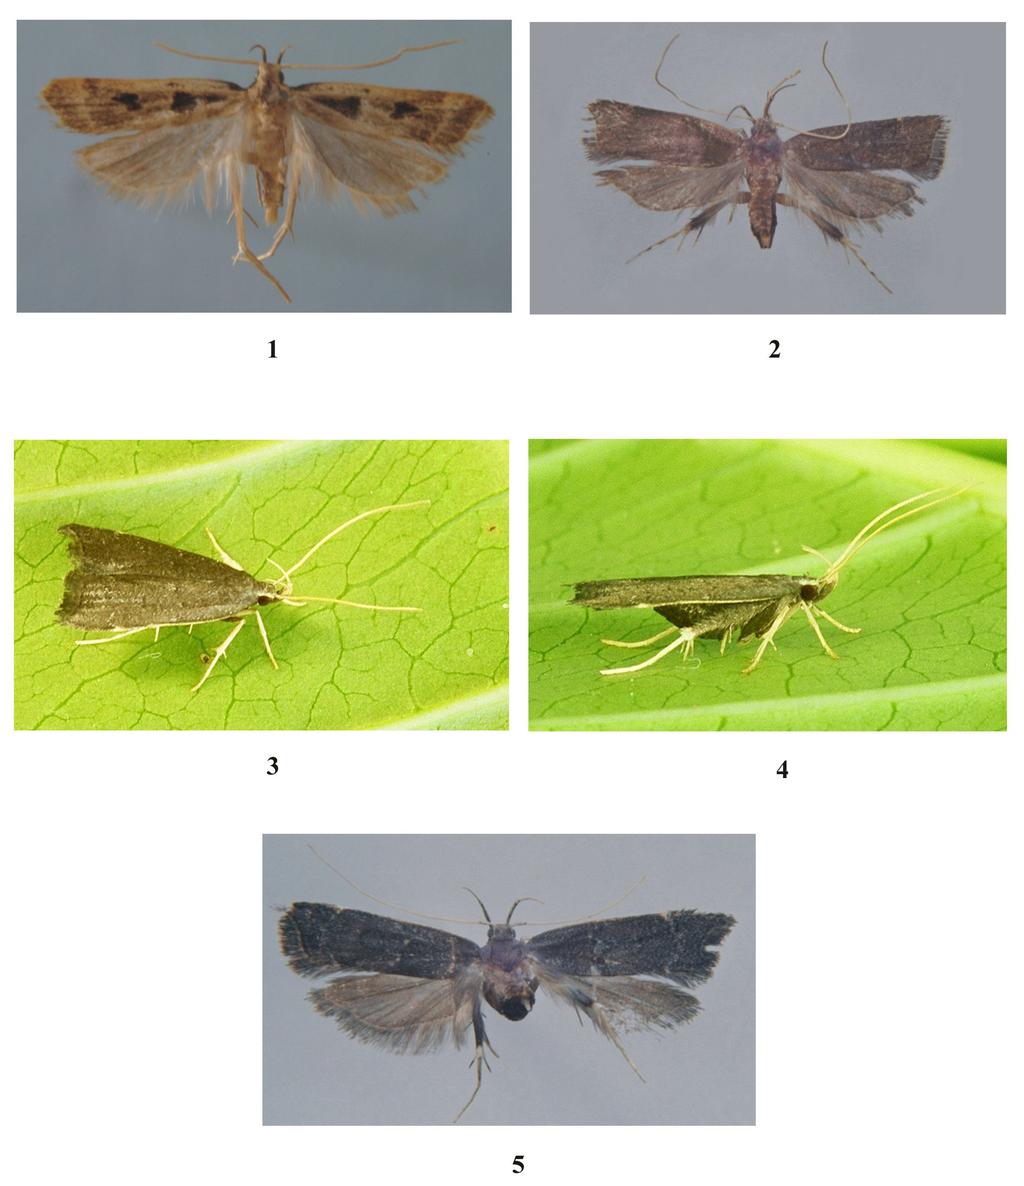 WADHAWAN D., WALIA V.K.: Three new species of genus Torodora 215 Figs 1-5. 1 - Torodora quadrangulata sp. nov.